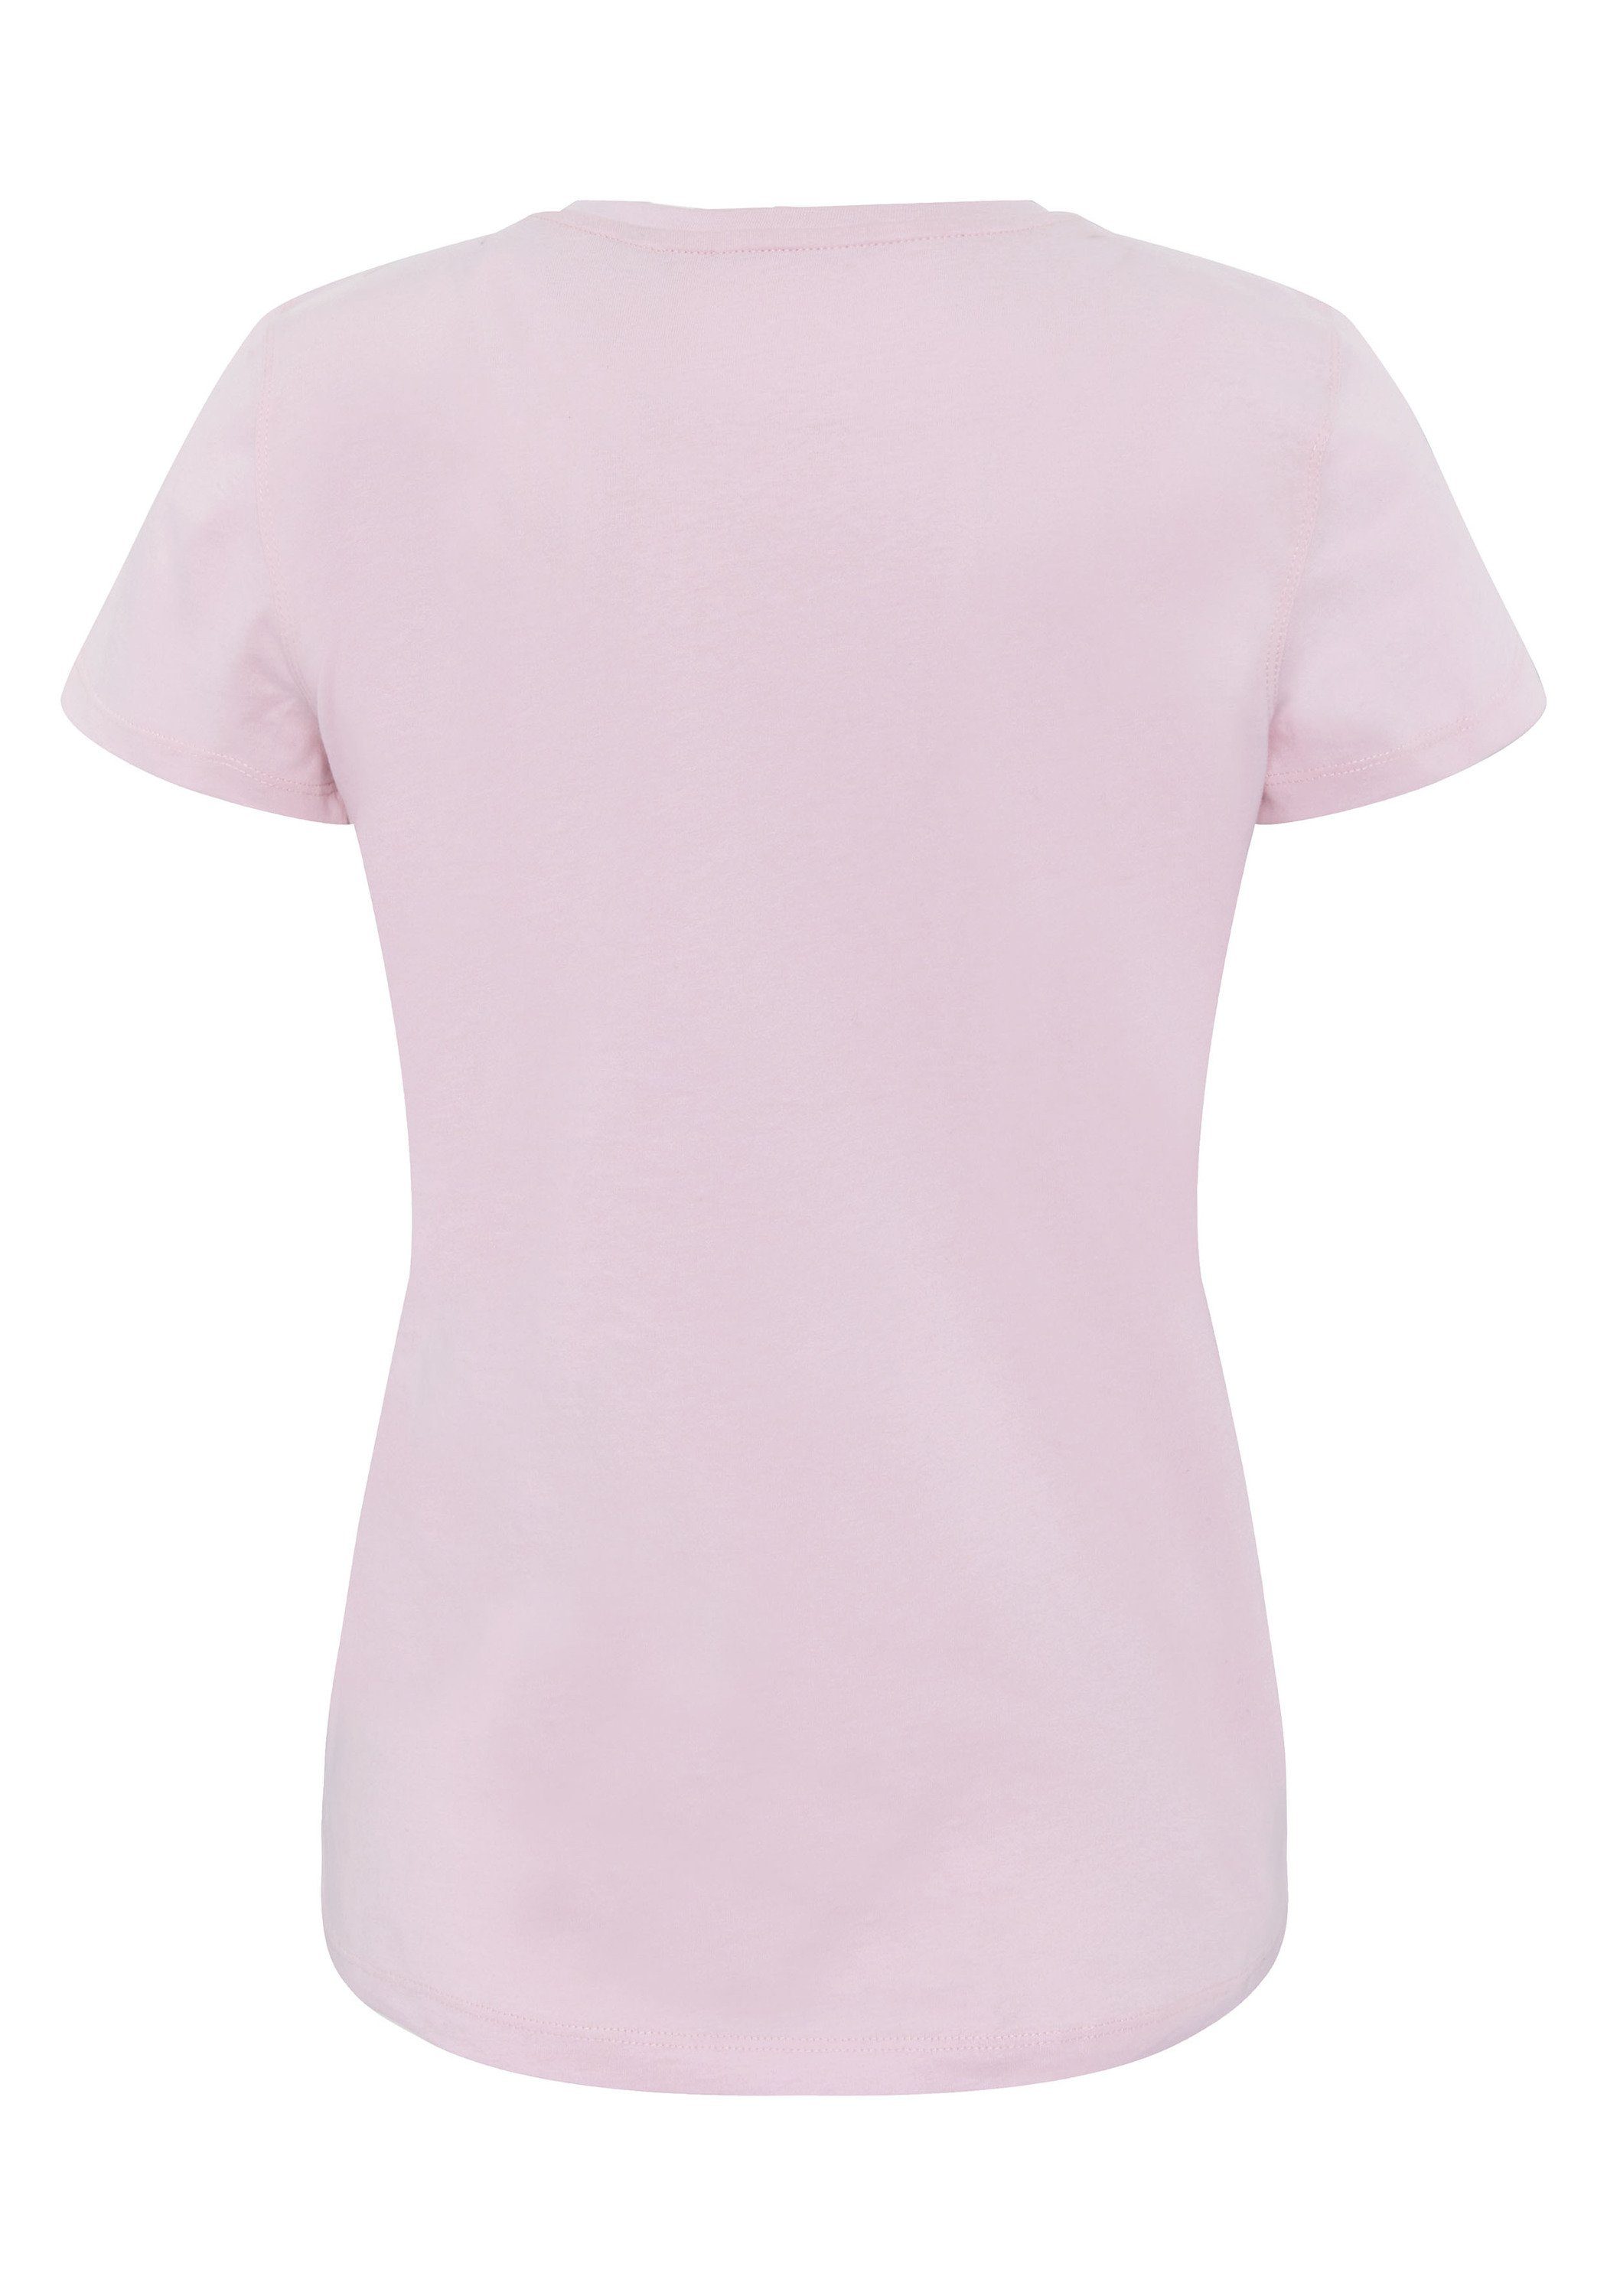 Print-Shirt Logo Lady Farbverlauf-Optik 1 T-Shirt Chiemsee Pink mit in